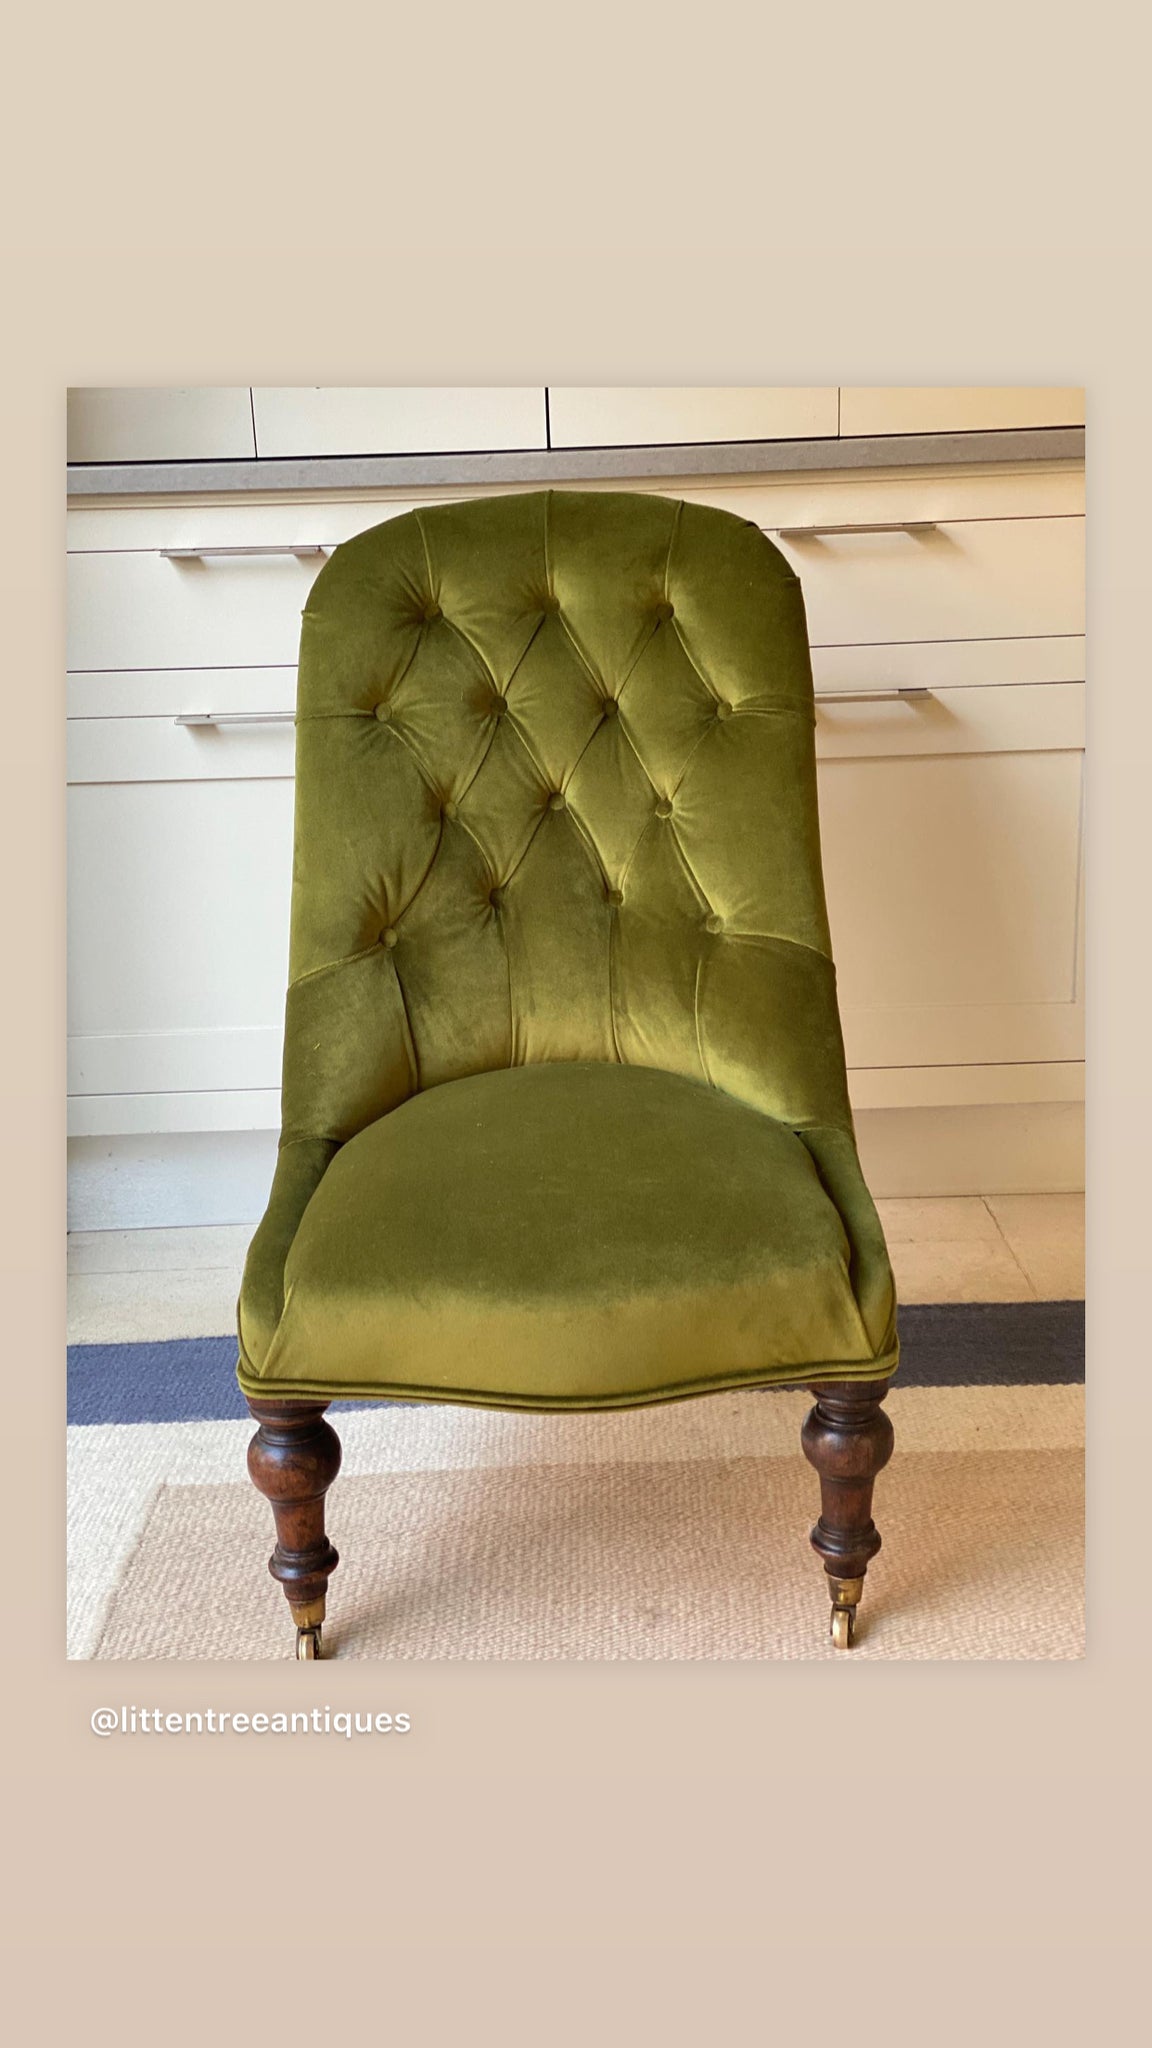 C19th French Slipper Chair in DG Green Velvet